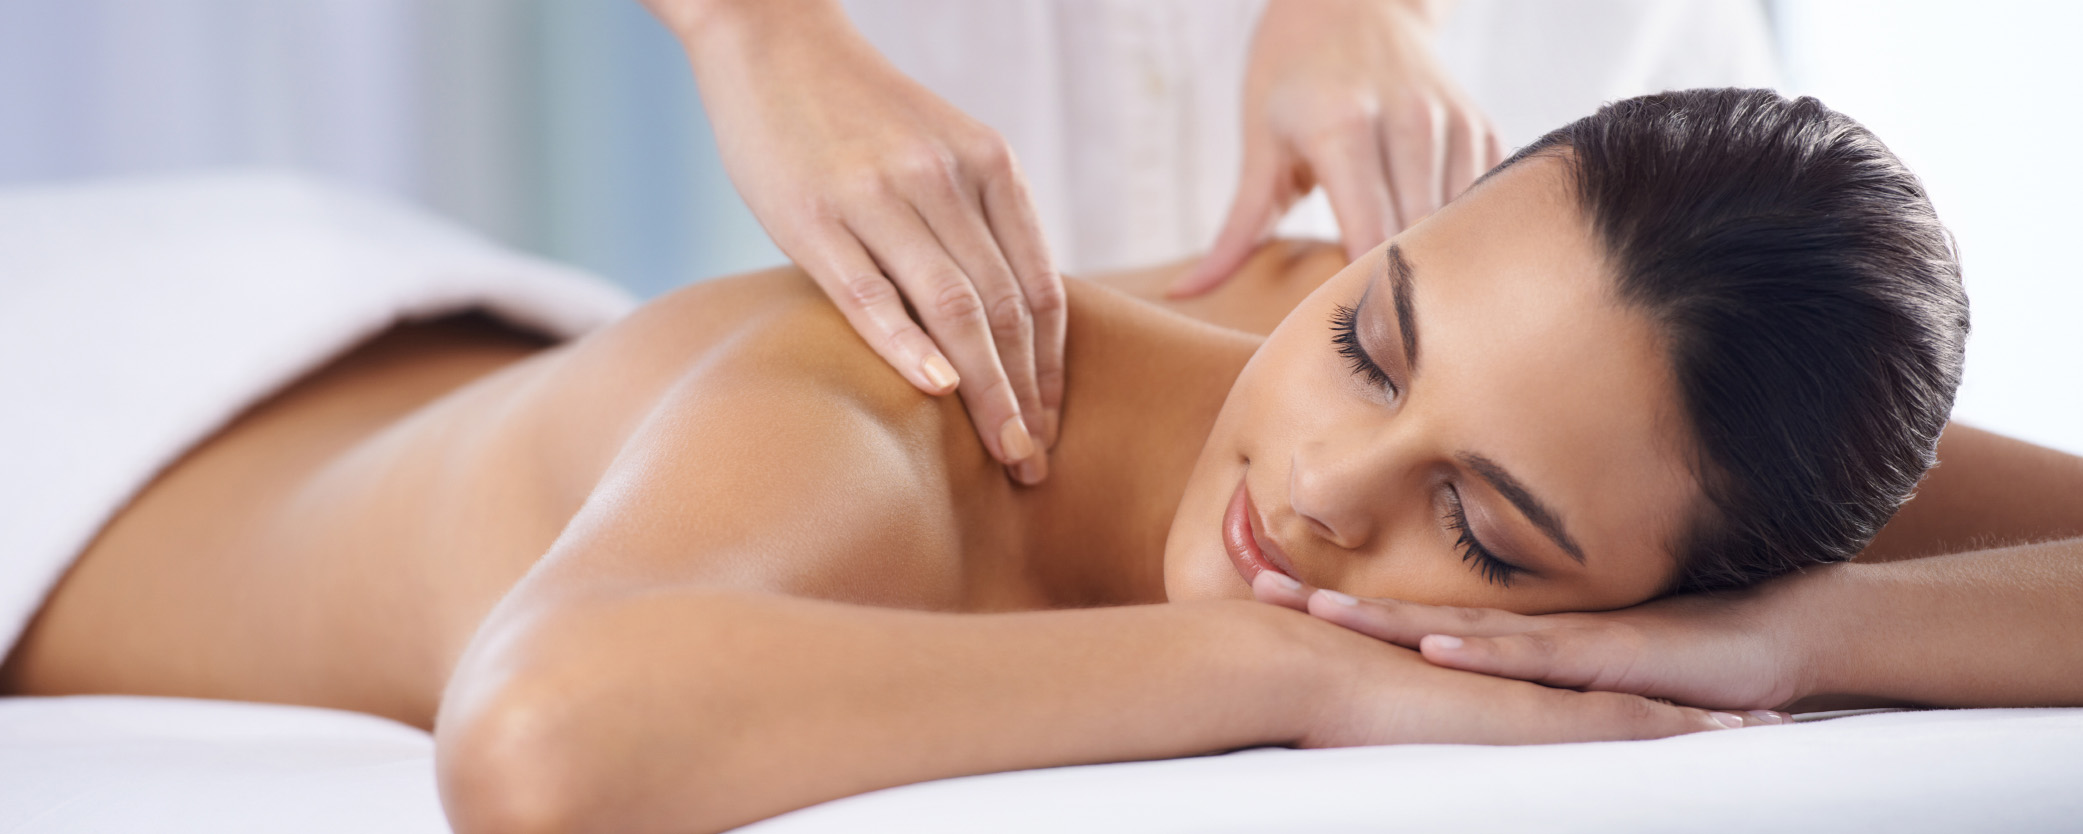 Woman Getting a massage